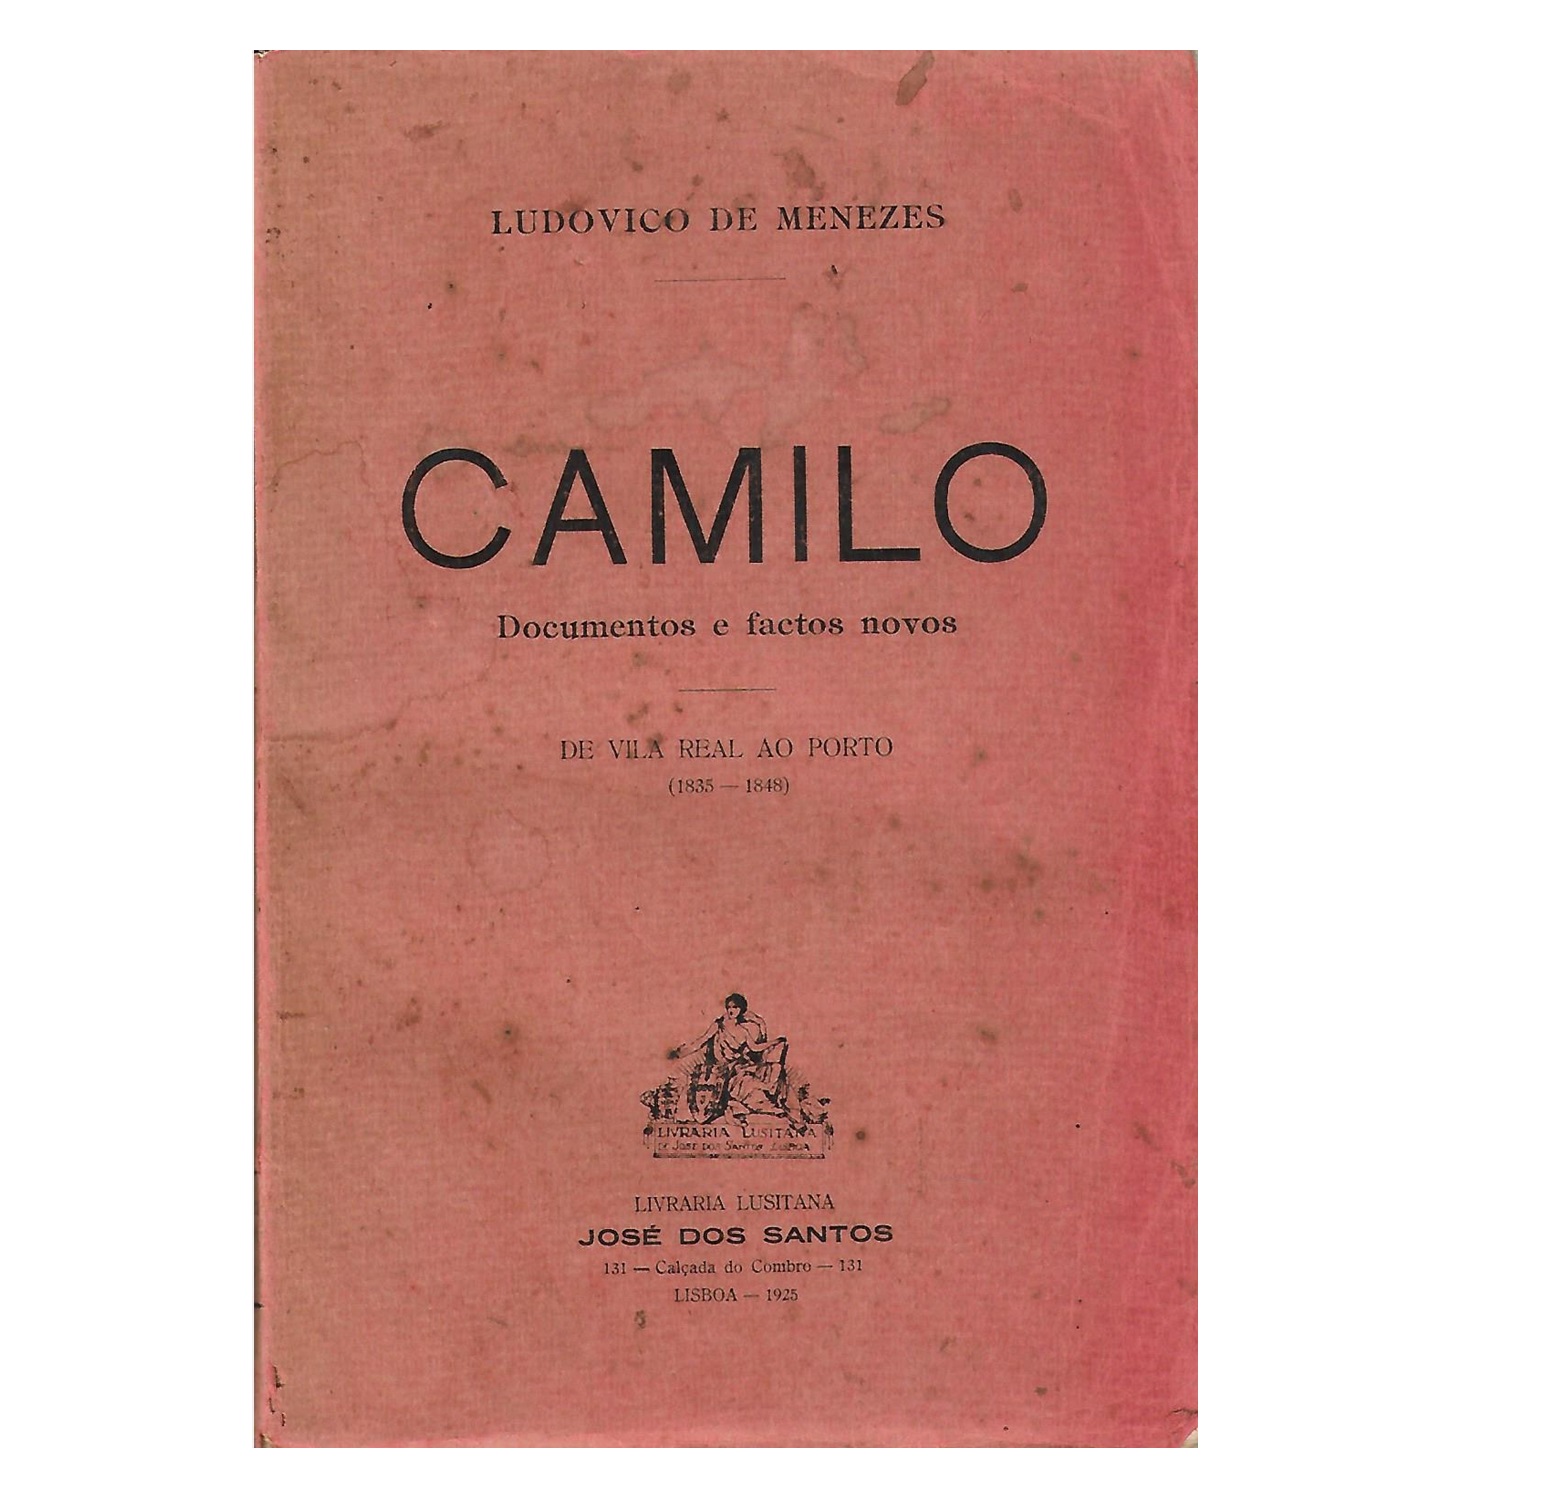  CAMILO. DOCUMENTOS E FACTOS NOVOS. DE VILA REAL AO PORTO/ (1835-1848).